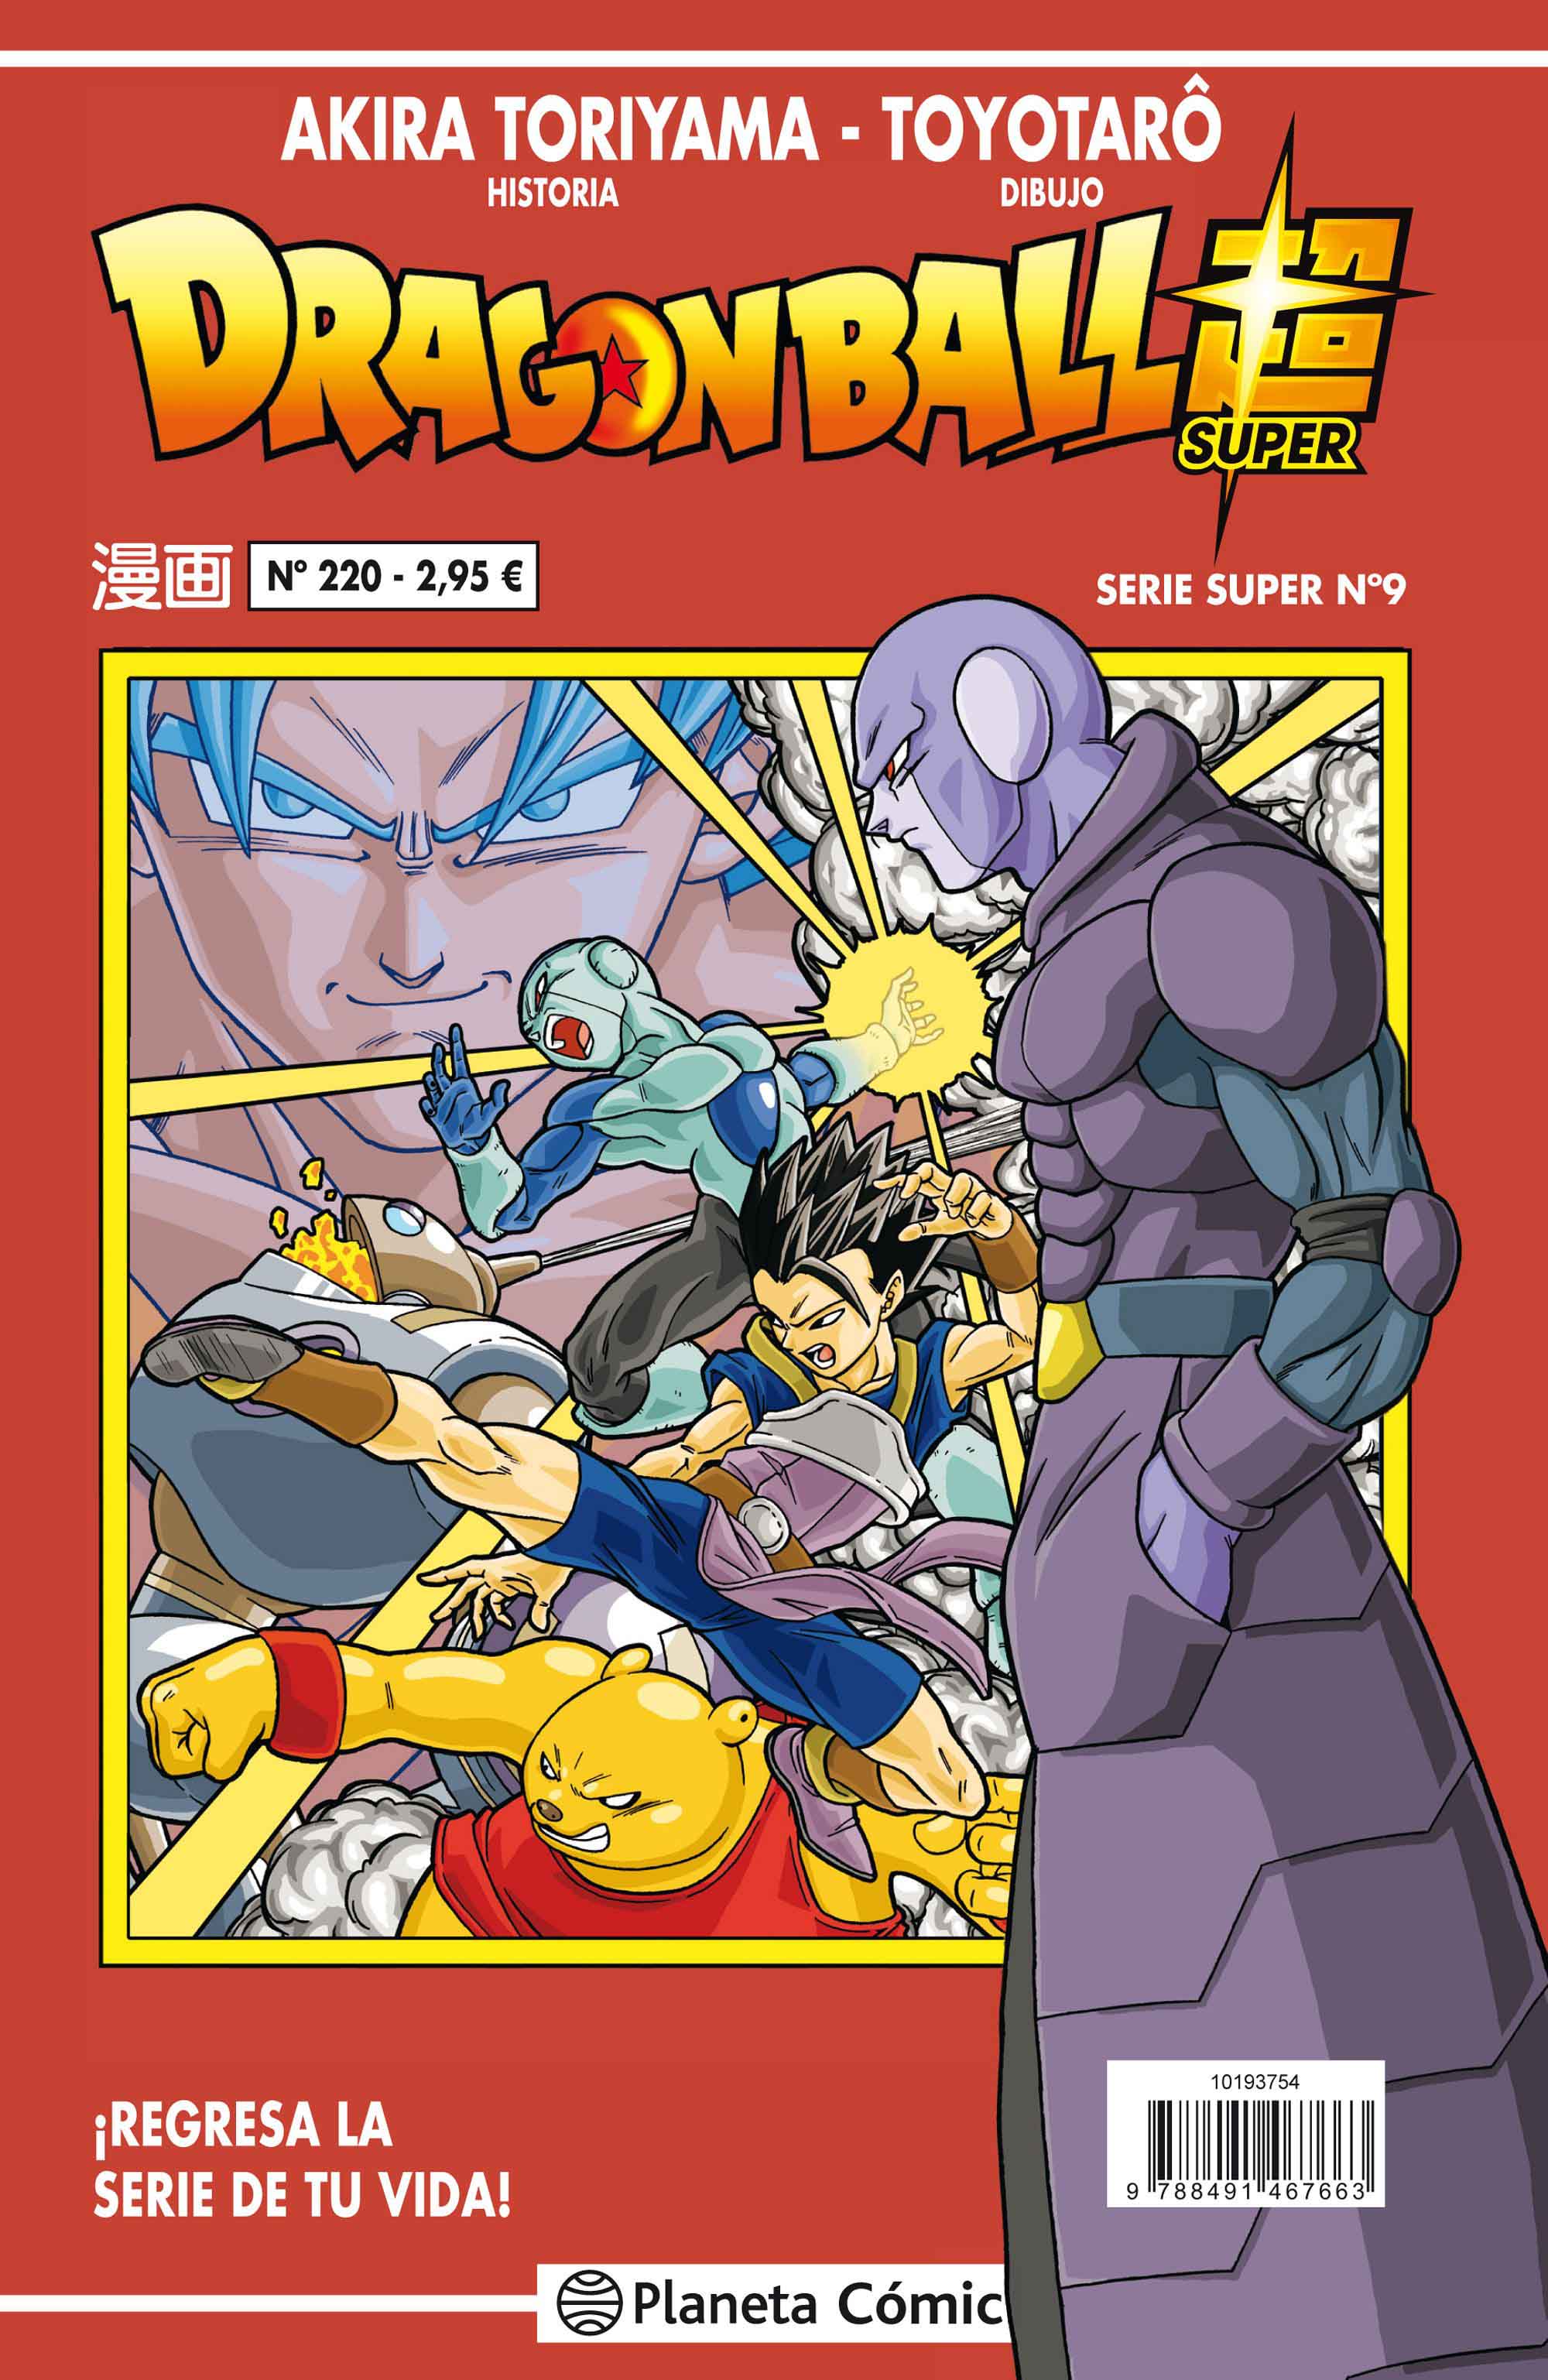 Reseña: ‘Dragon Ball Super’ nº 9 / nº 220 Serie Roja